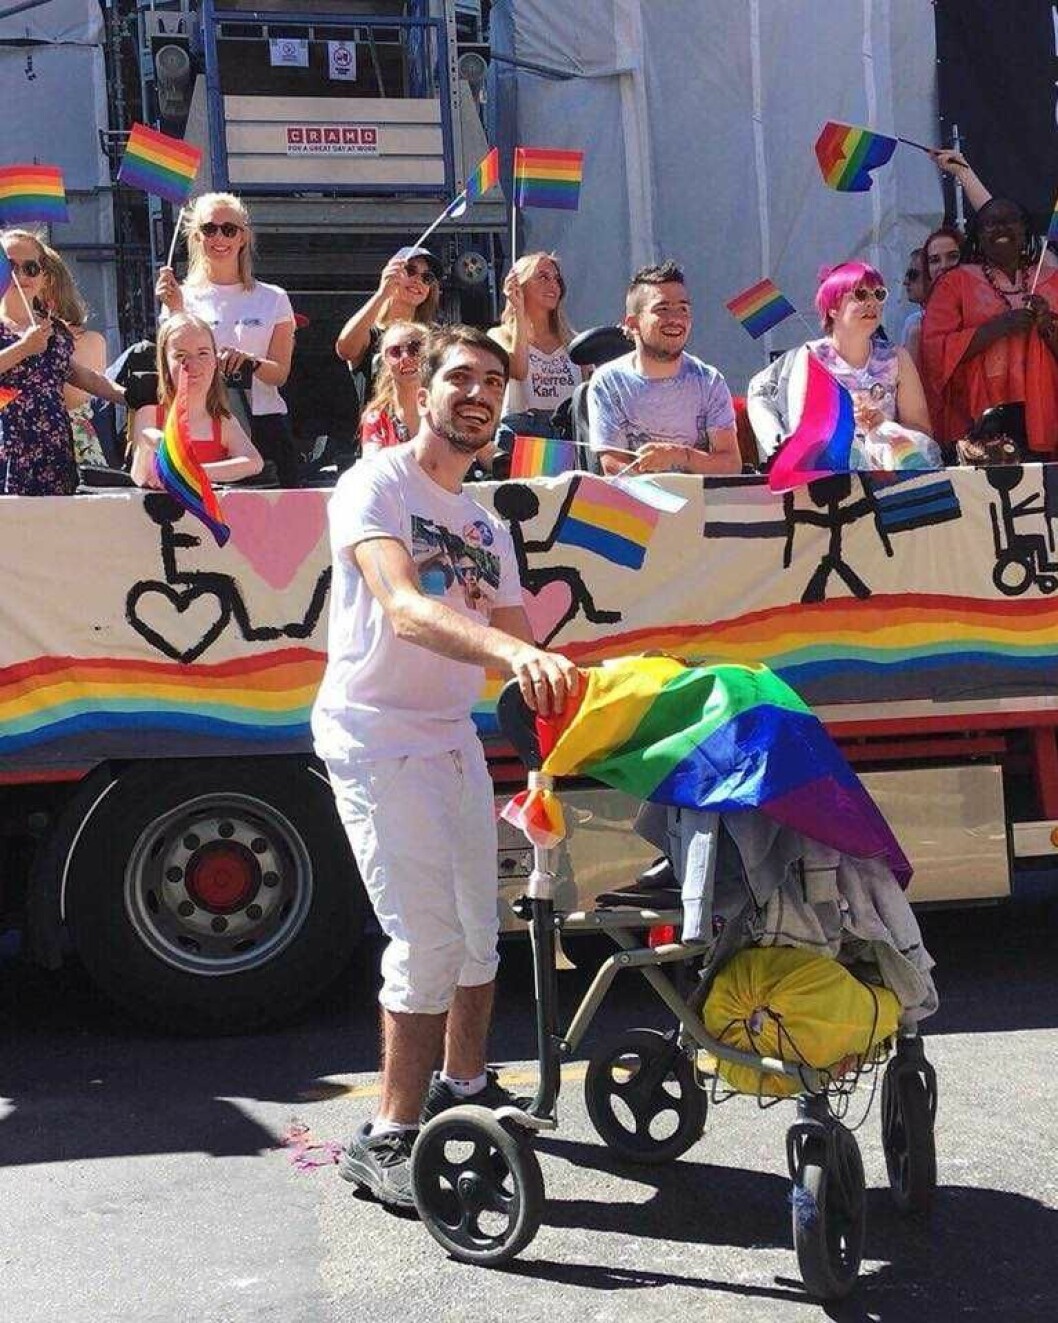 En fargeeksplosjon med glade mennesker i et strålende vær. Pride-paraden 2018 ble slik alle har drømt om. Foto: Oslo Pride